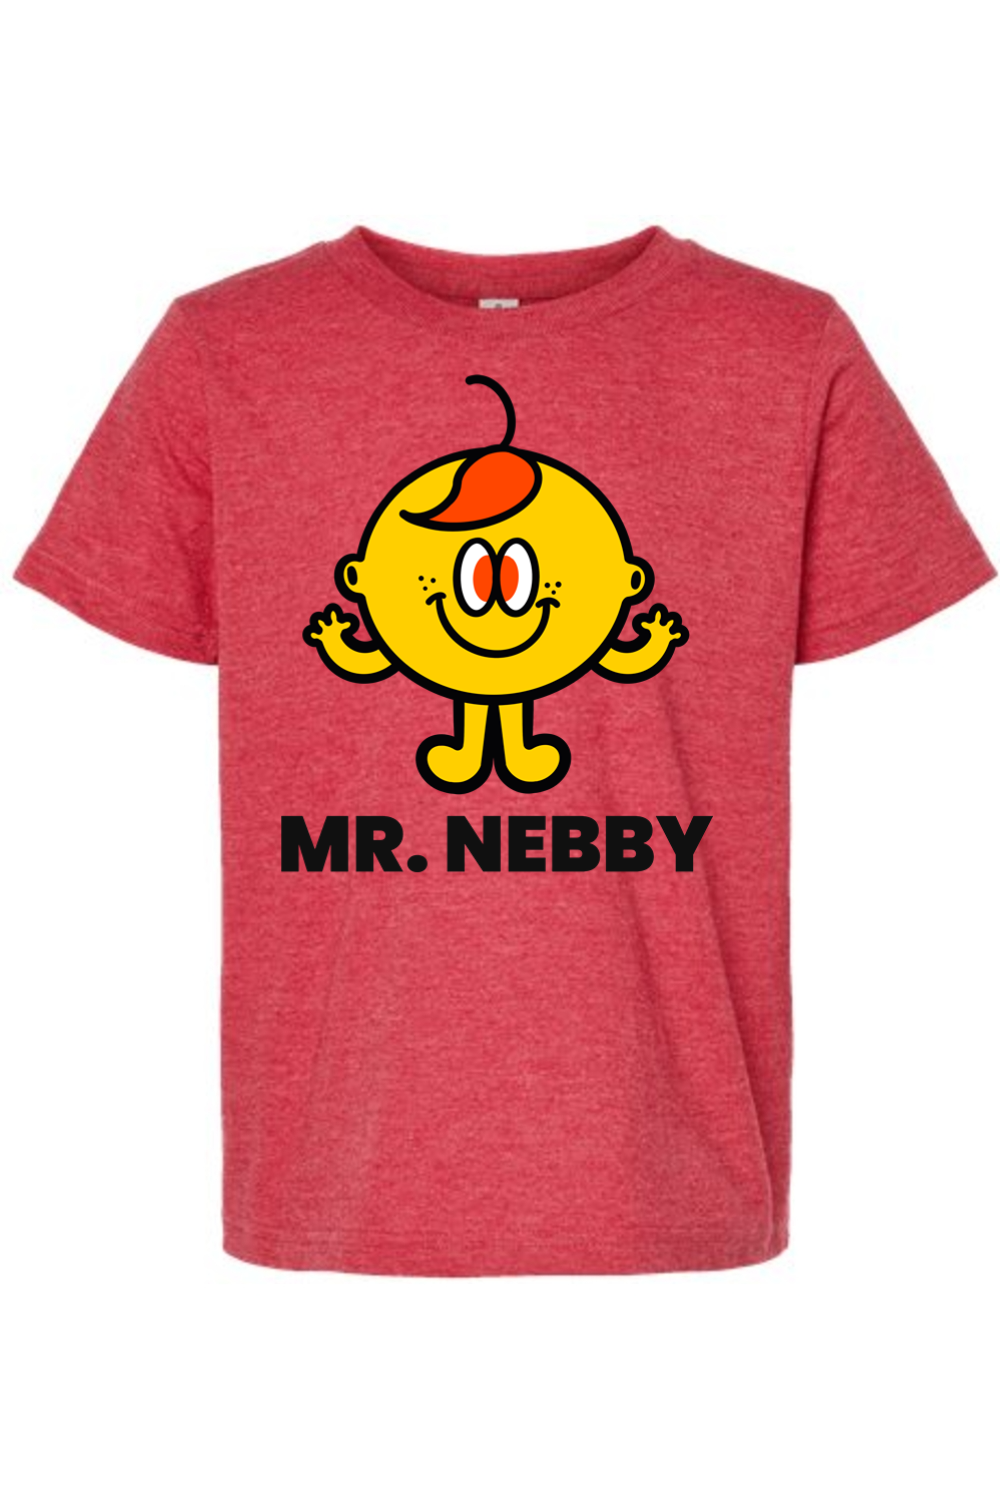 Mr. Nebby - Kids Tee - Yinzylvania